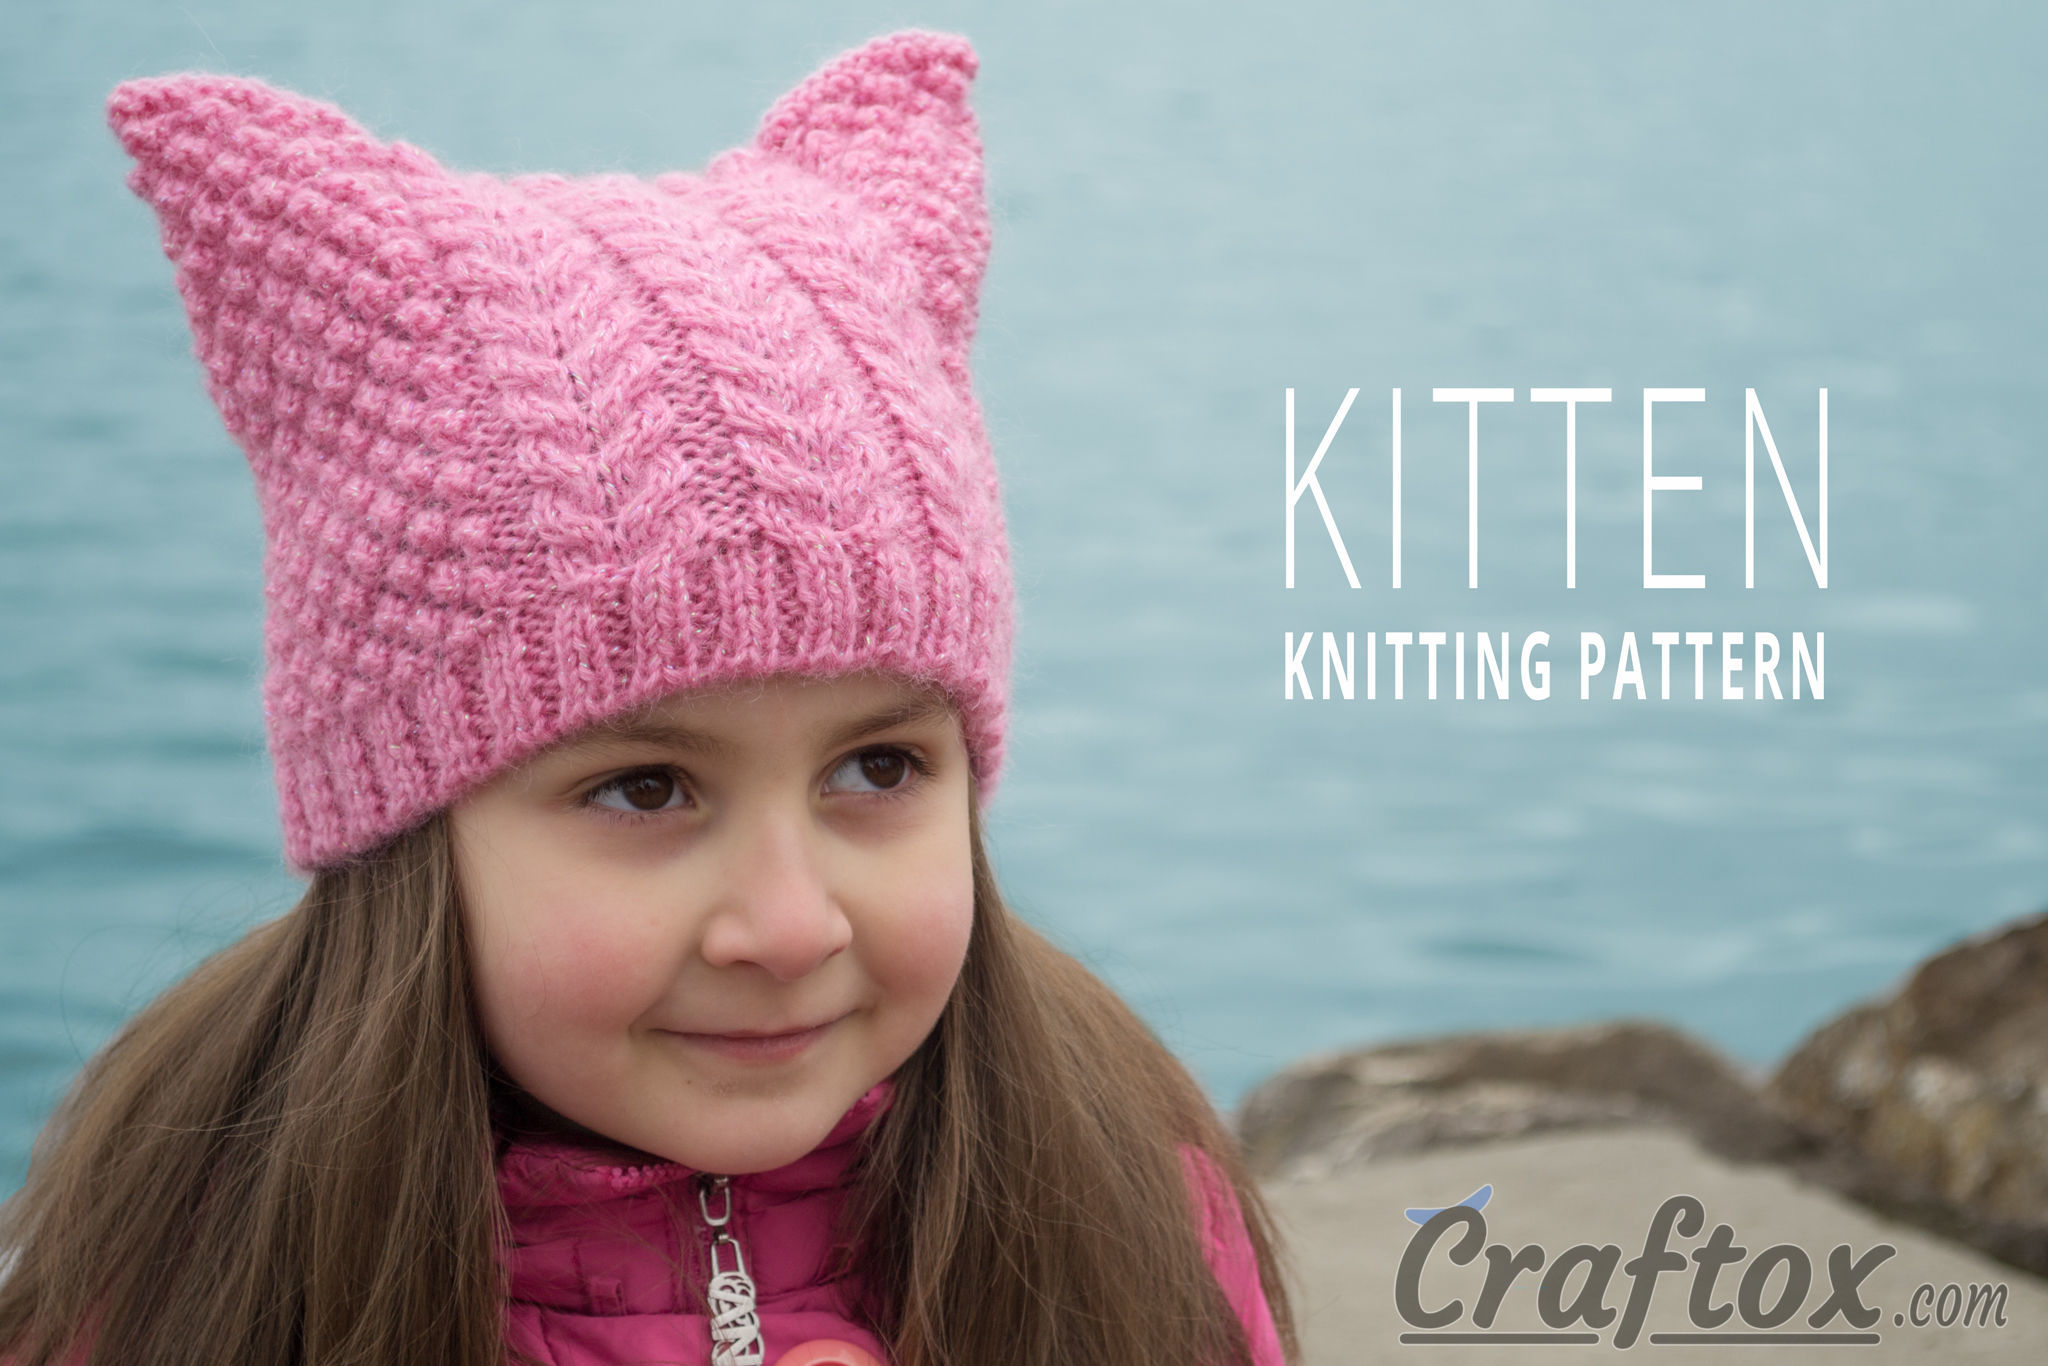 Aran (cables) cat ear beanie "Kitten" free knitting pattern.